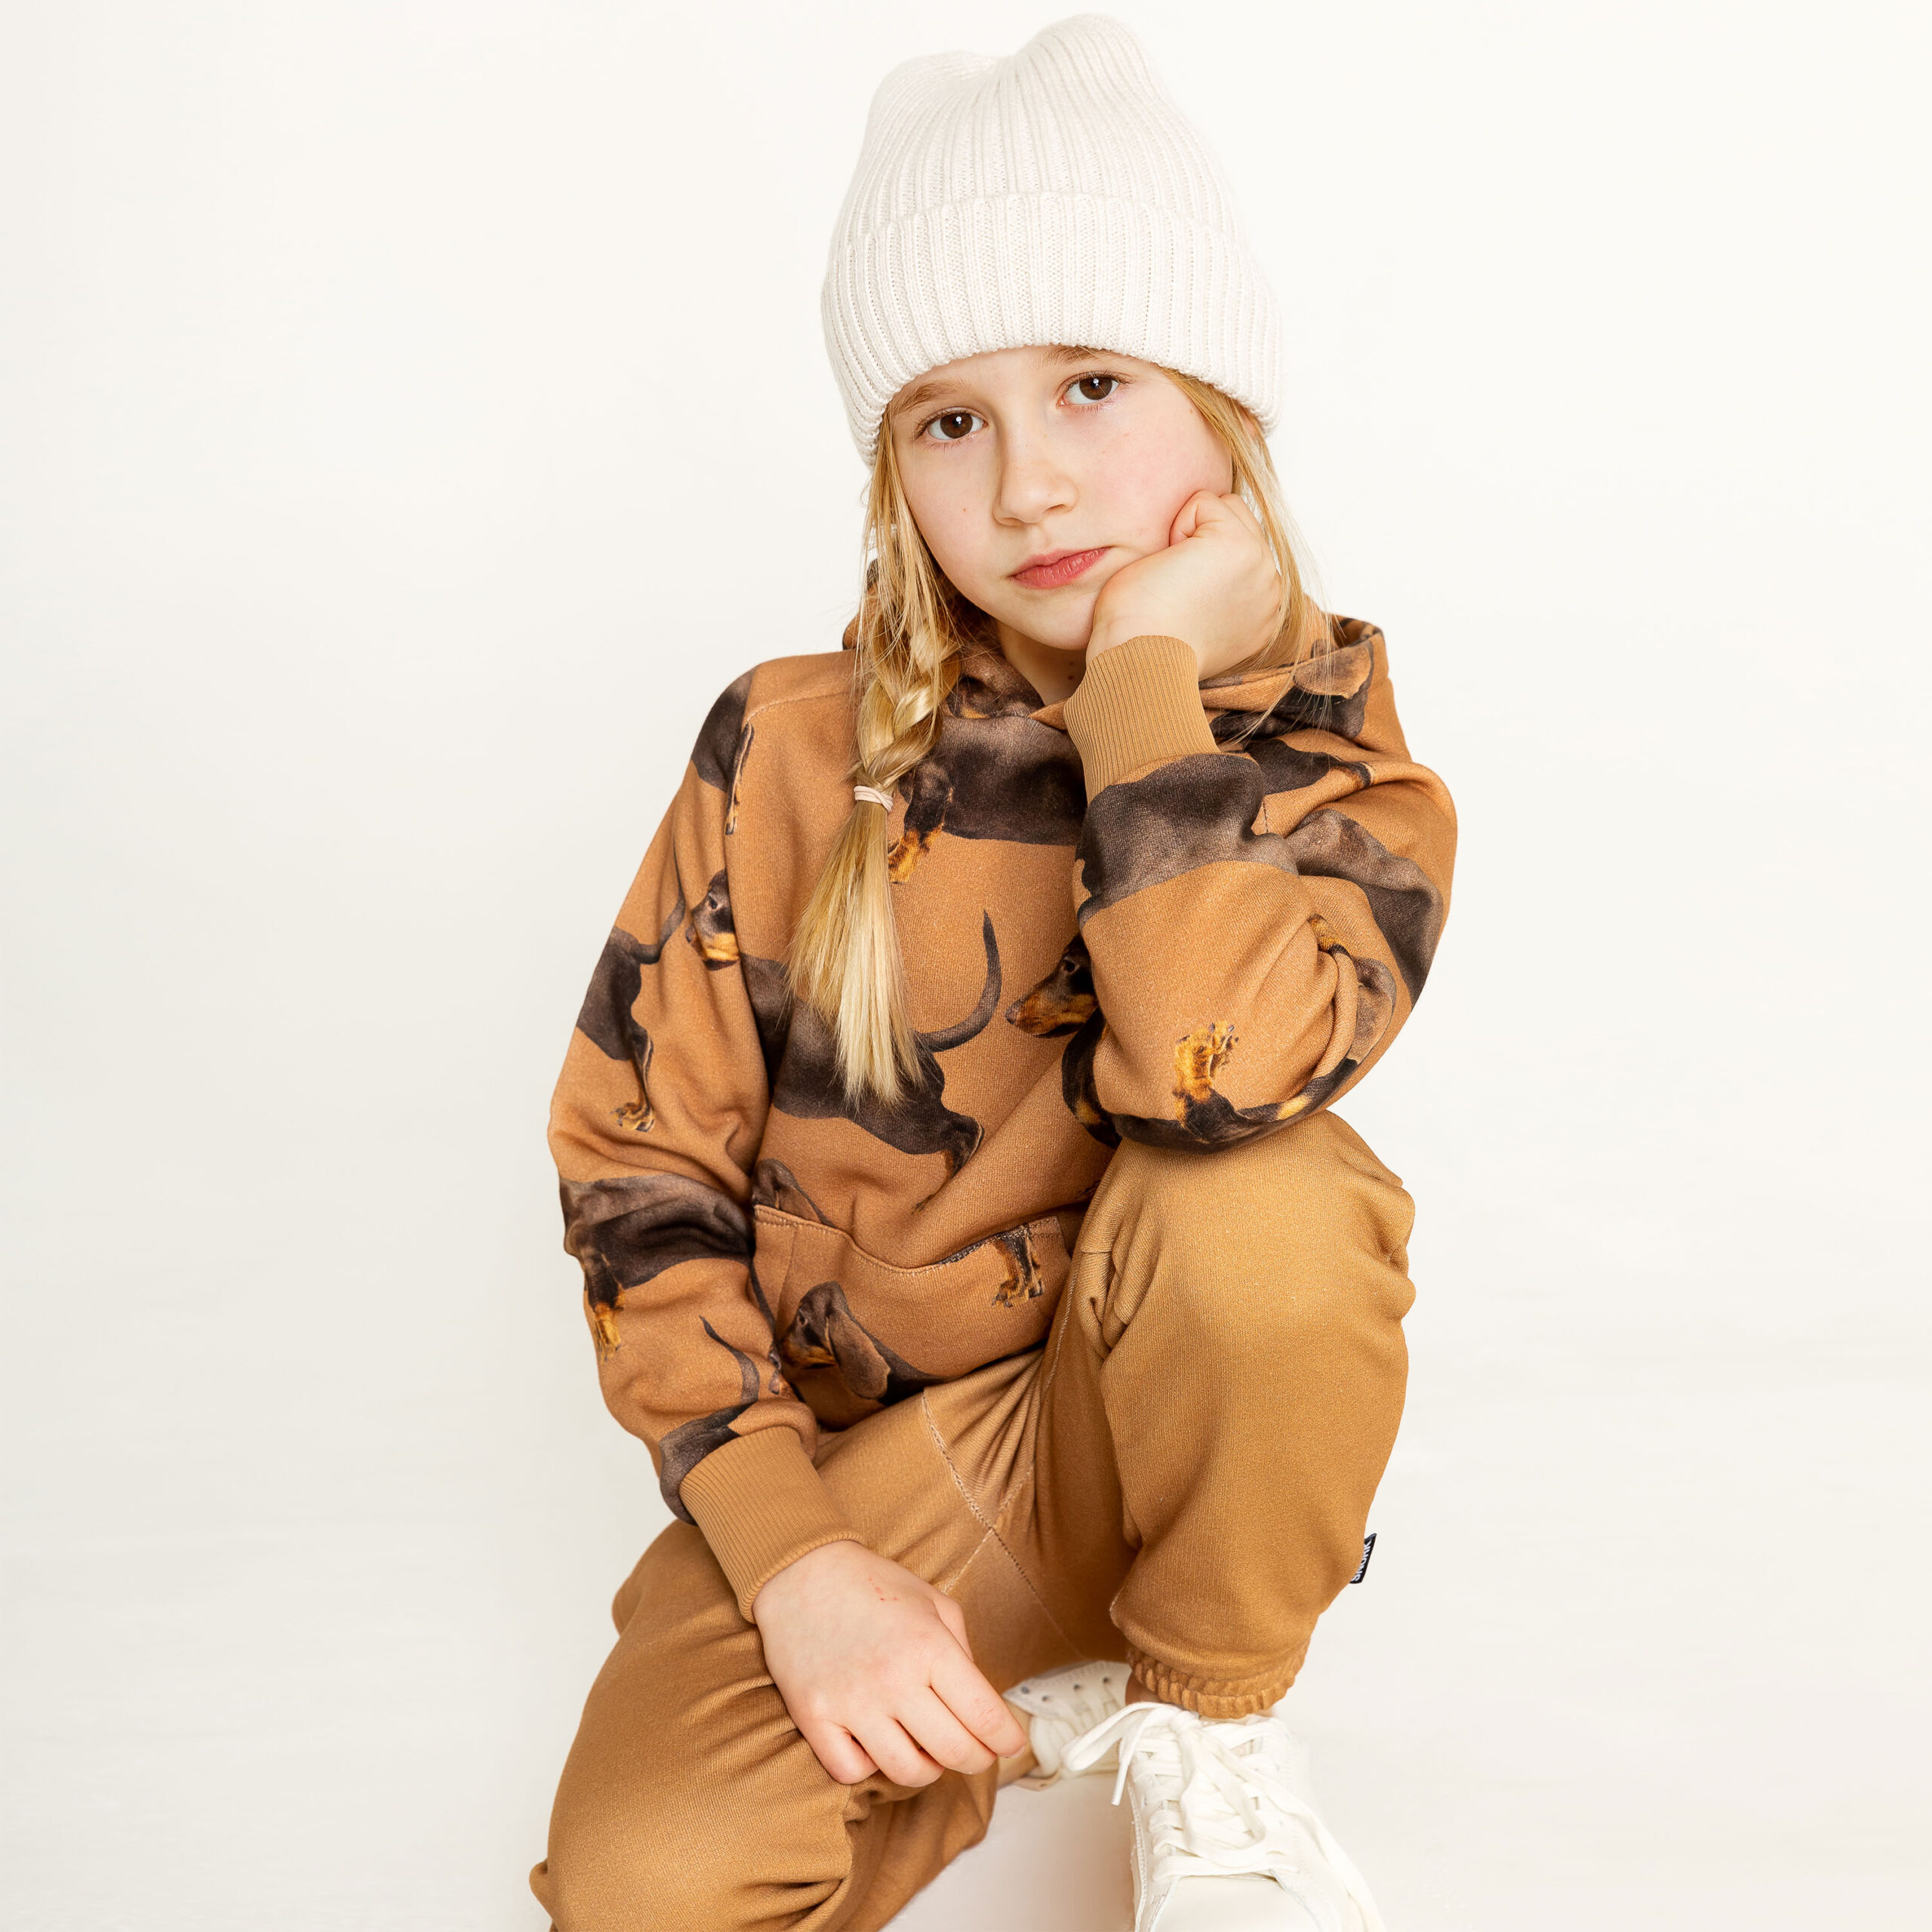 Fashion – lookbook – kids fotografie Zwolle Utrecht Amsterdam Groningen – Stephanie Verhart